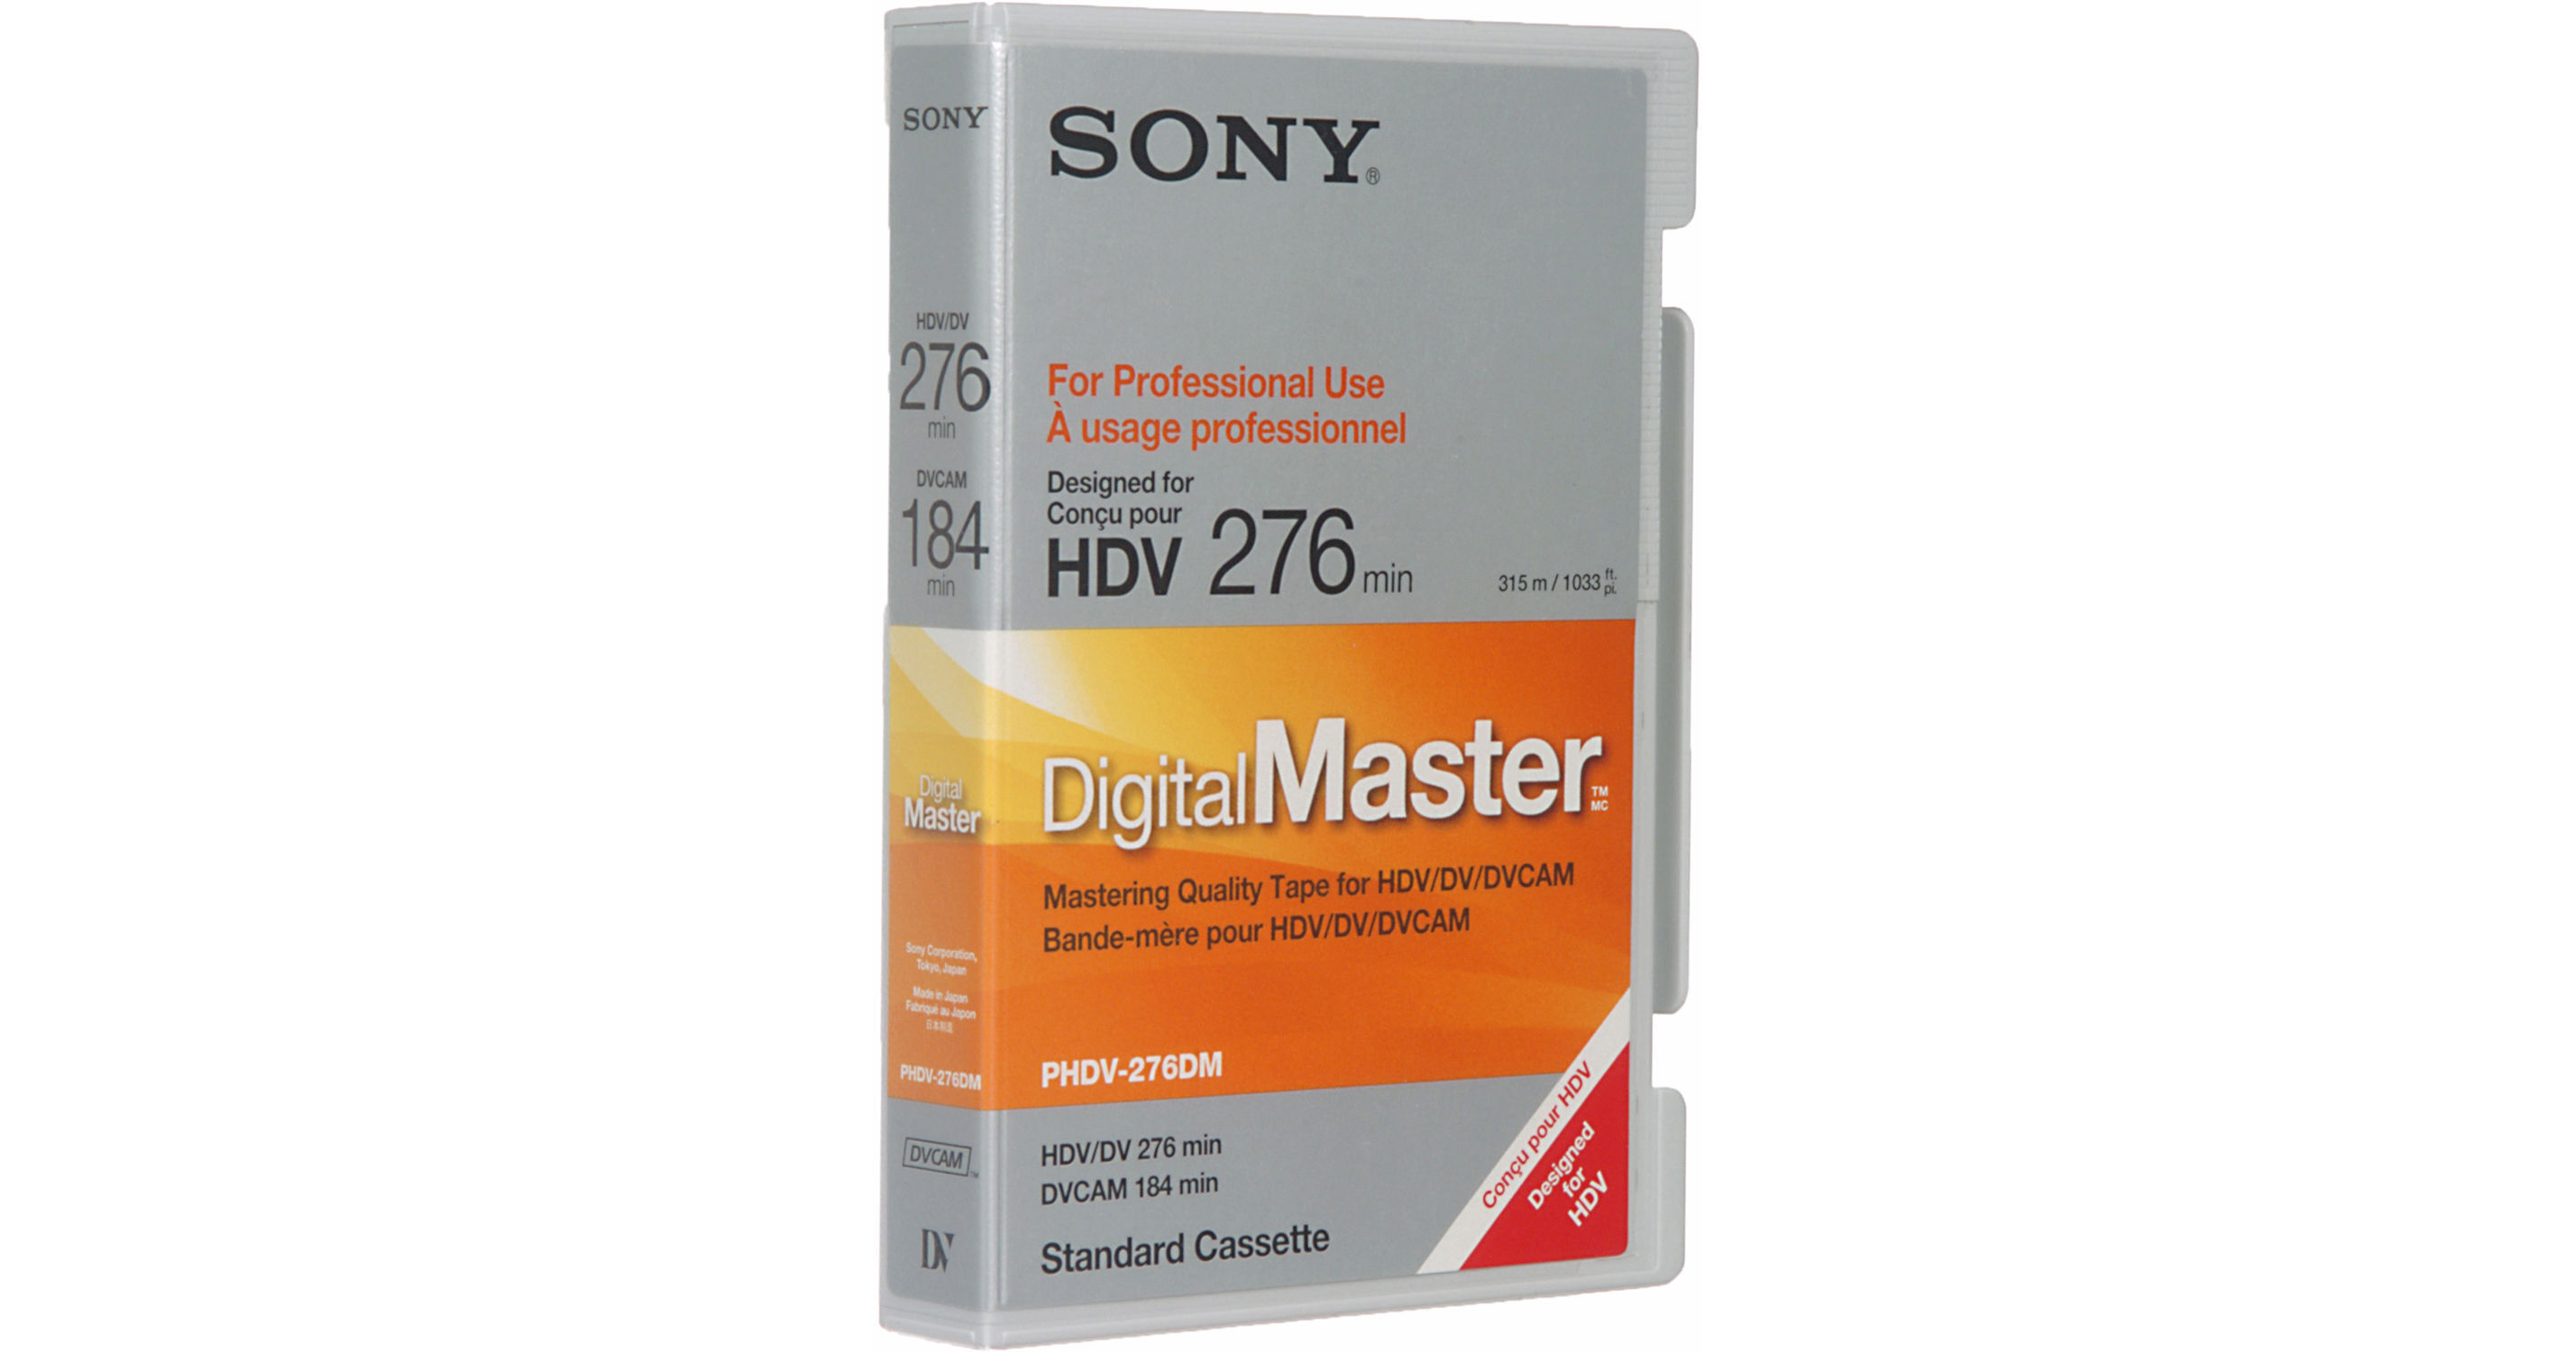 Sony PHDV-276DM 276 Minute Digital Master Videocassette